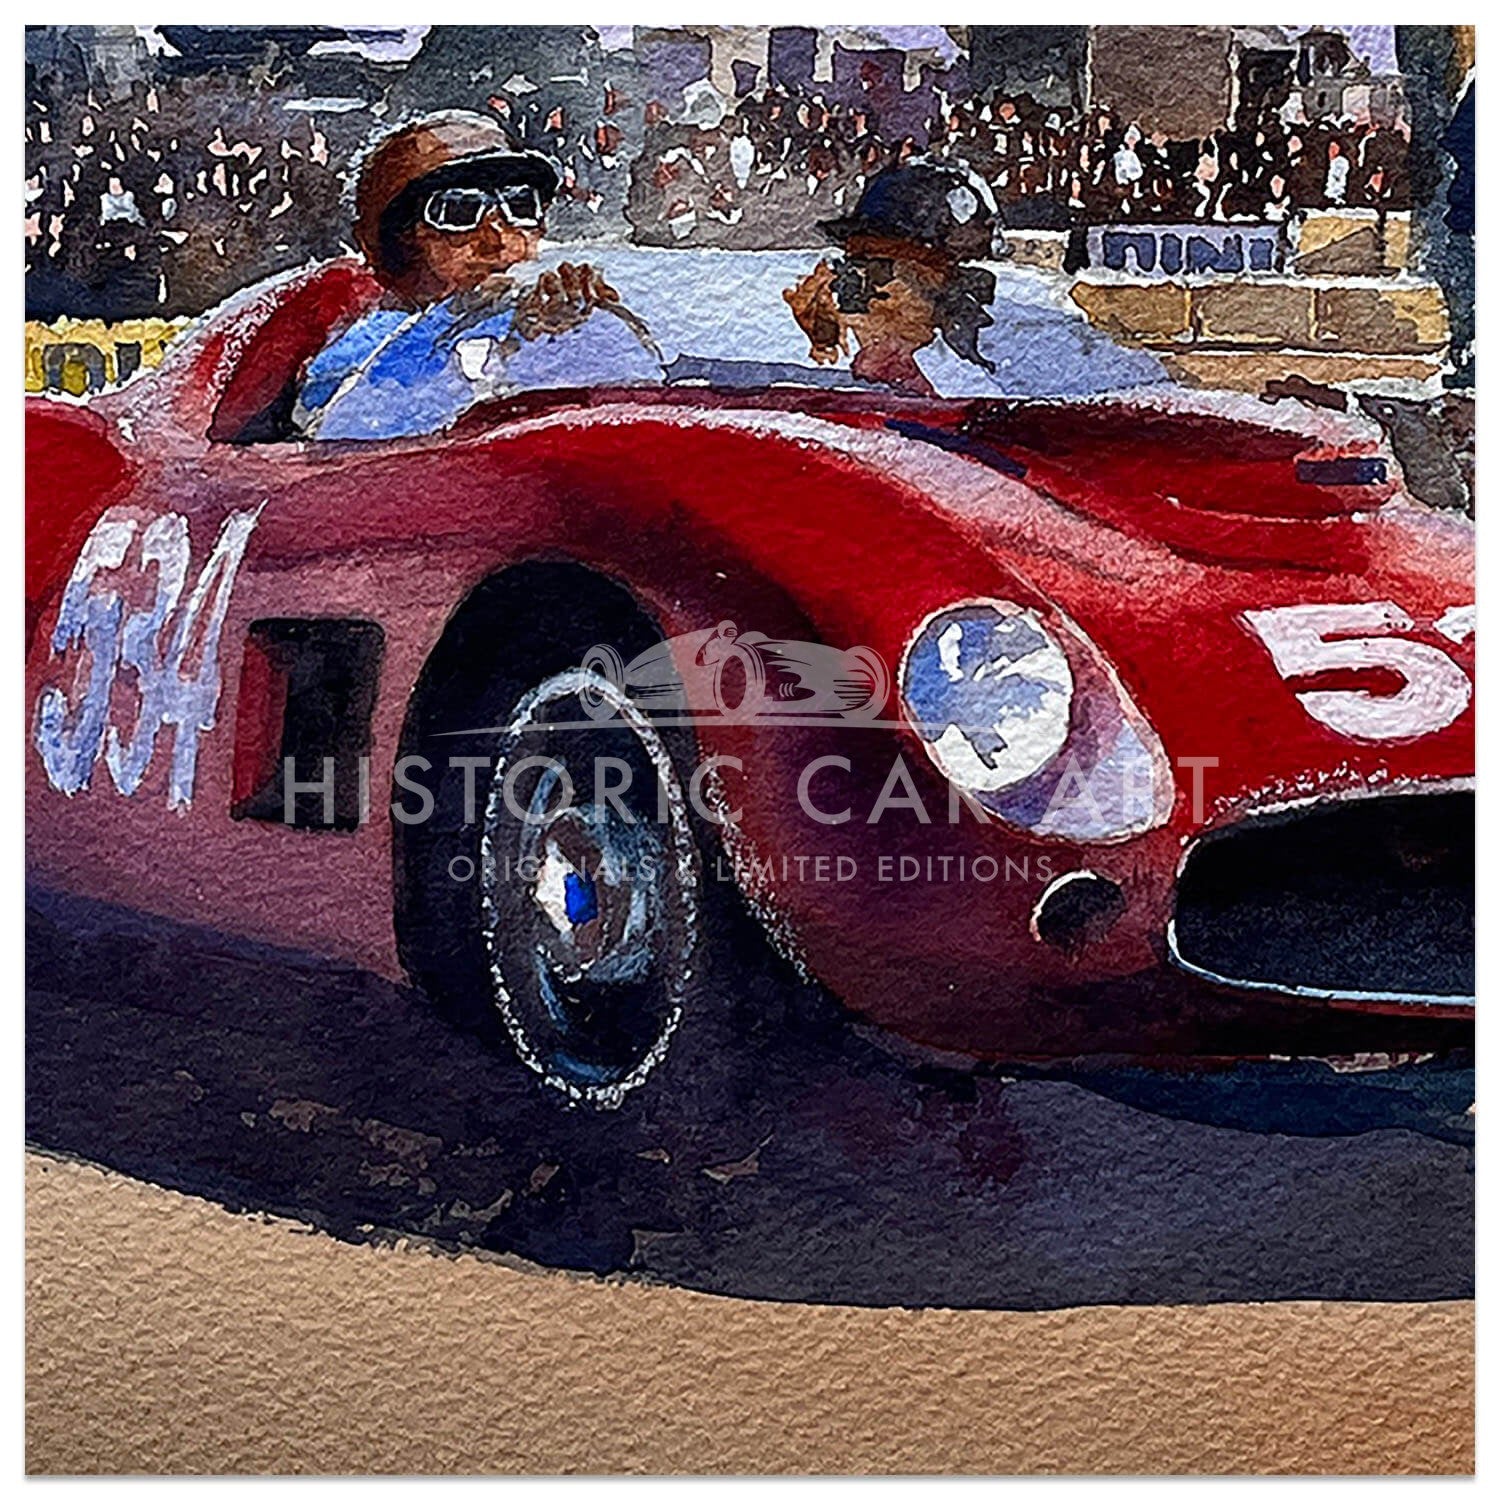 The Greatest of Gentlemen | Mille Miglia 1957 | Peter Collins | Artwork